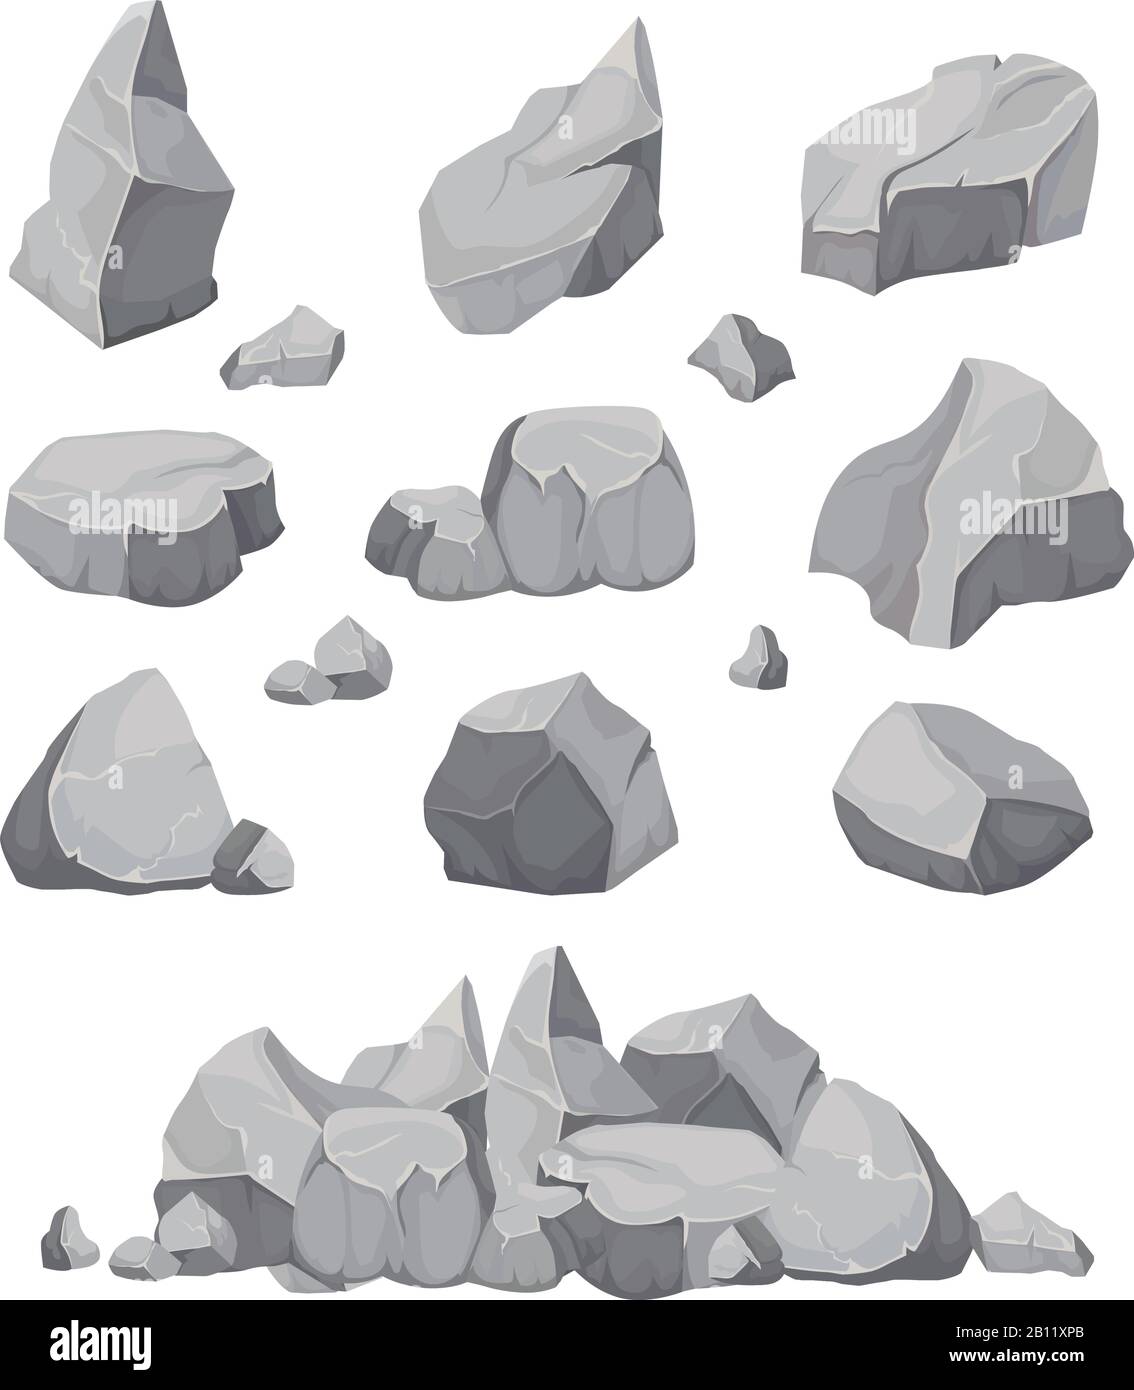 Steine. Graphitstein, Kohle und Steine stapeln isolierte Vektorgrafiken Stock Vektor